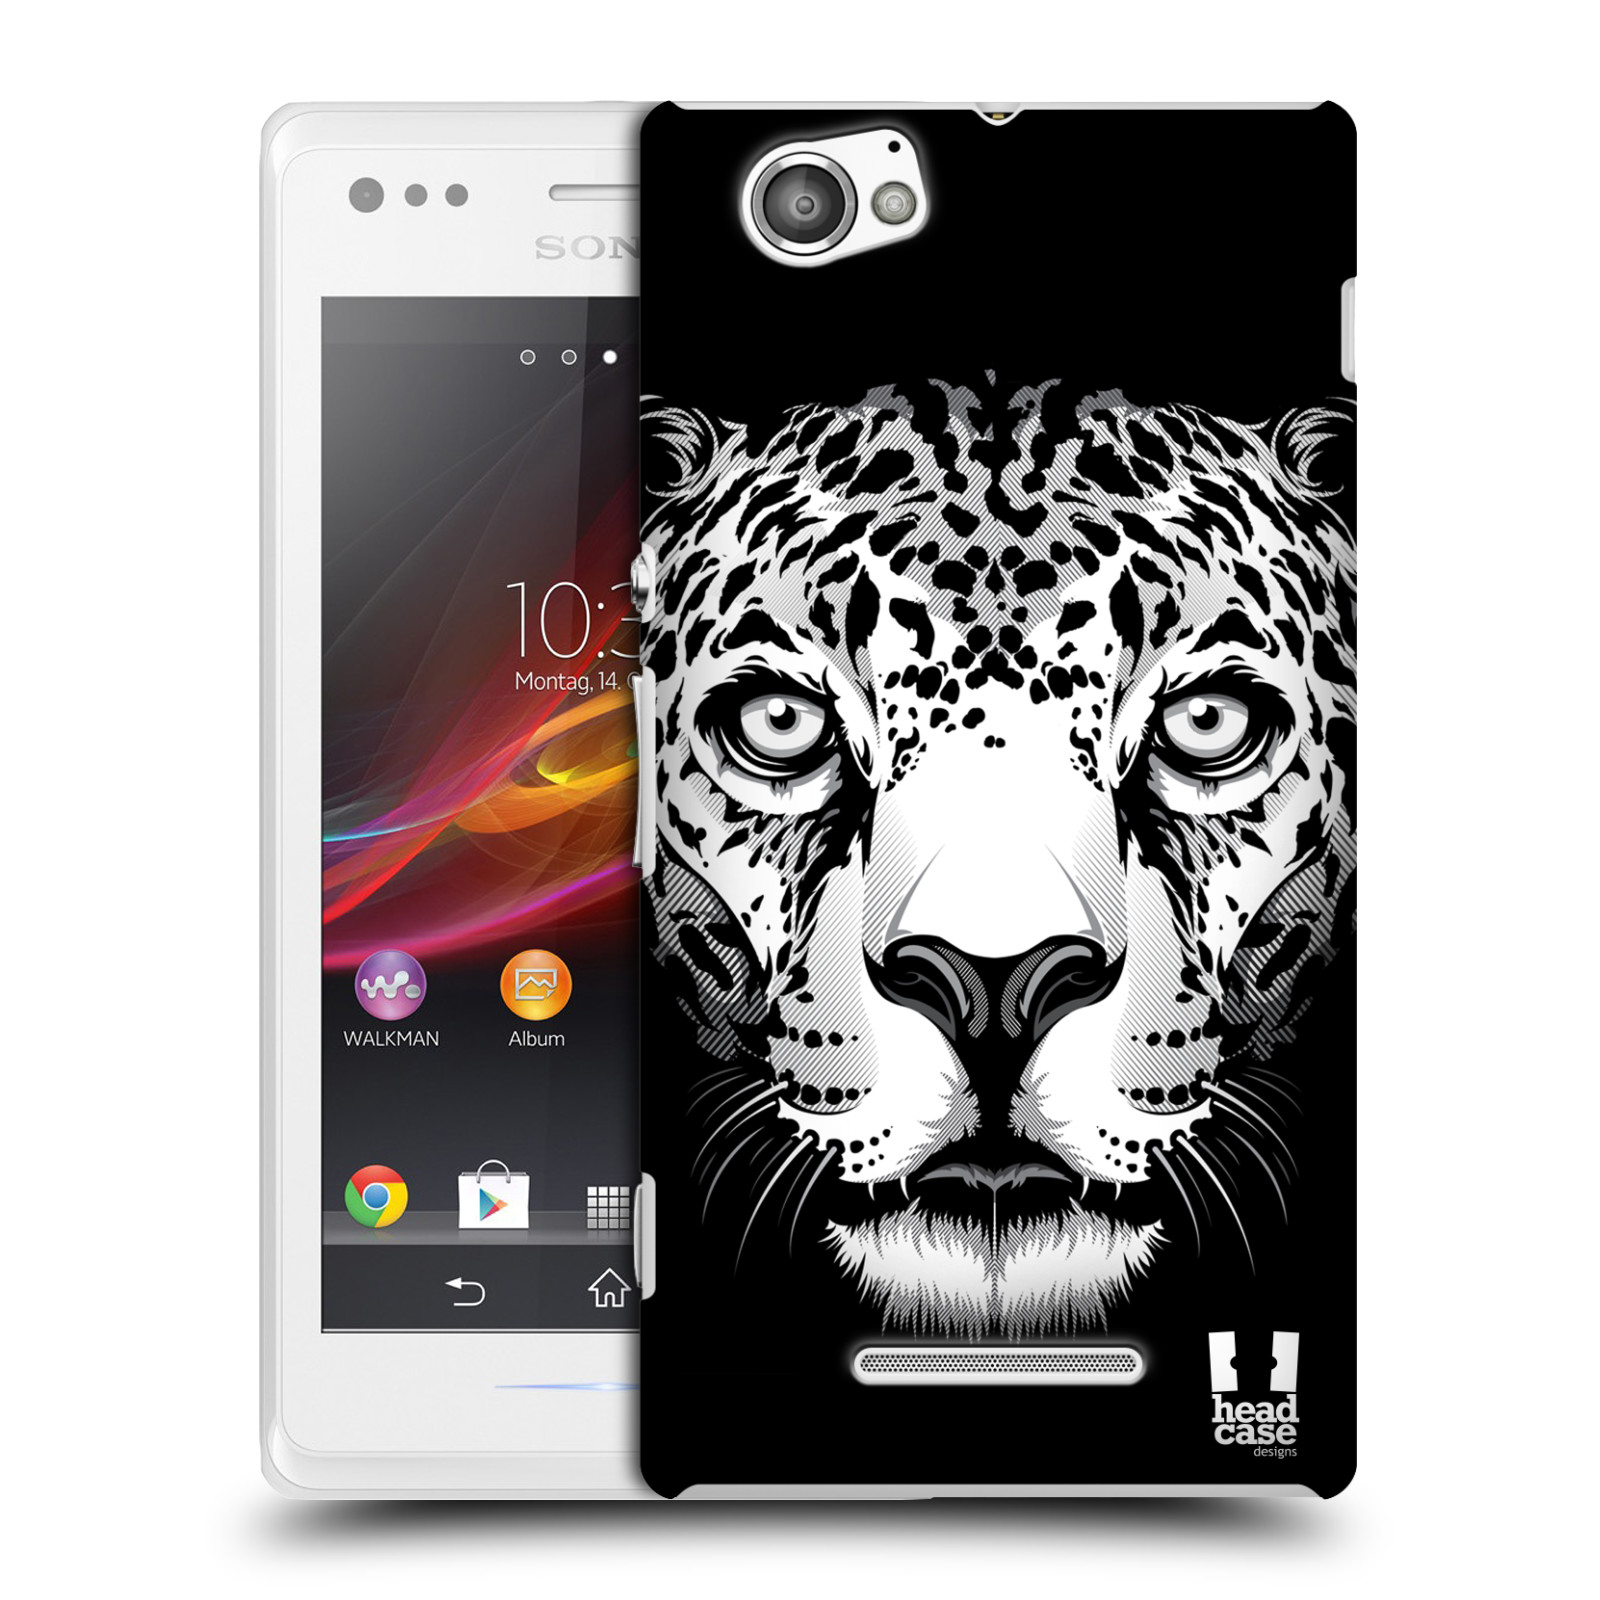 HEAD CASE plastový obal na mobil Sony Xperia M vzor Zvíře kreslená tvář leopard